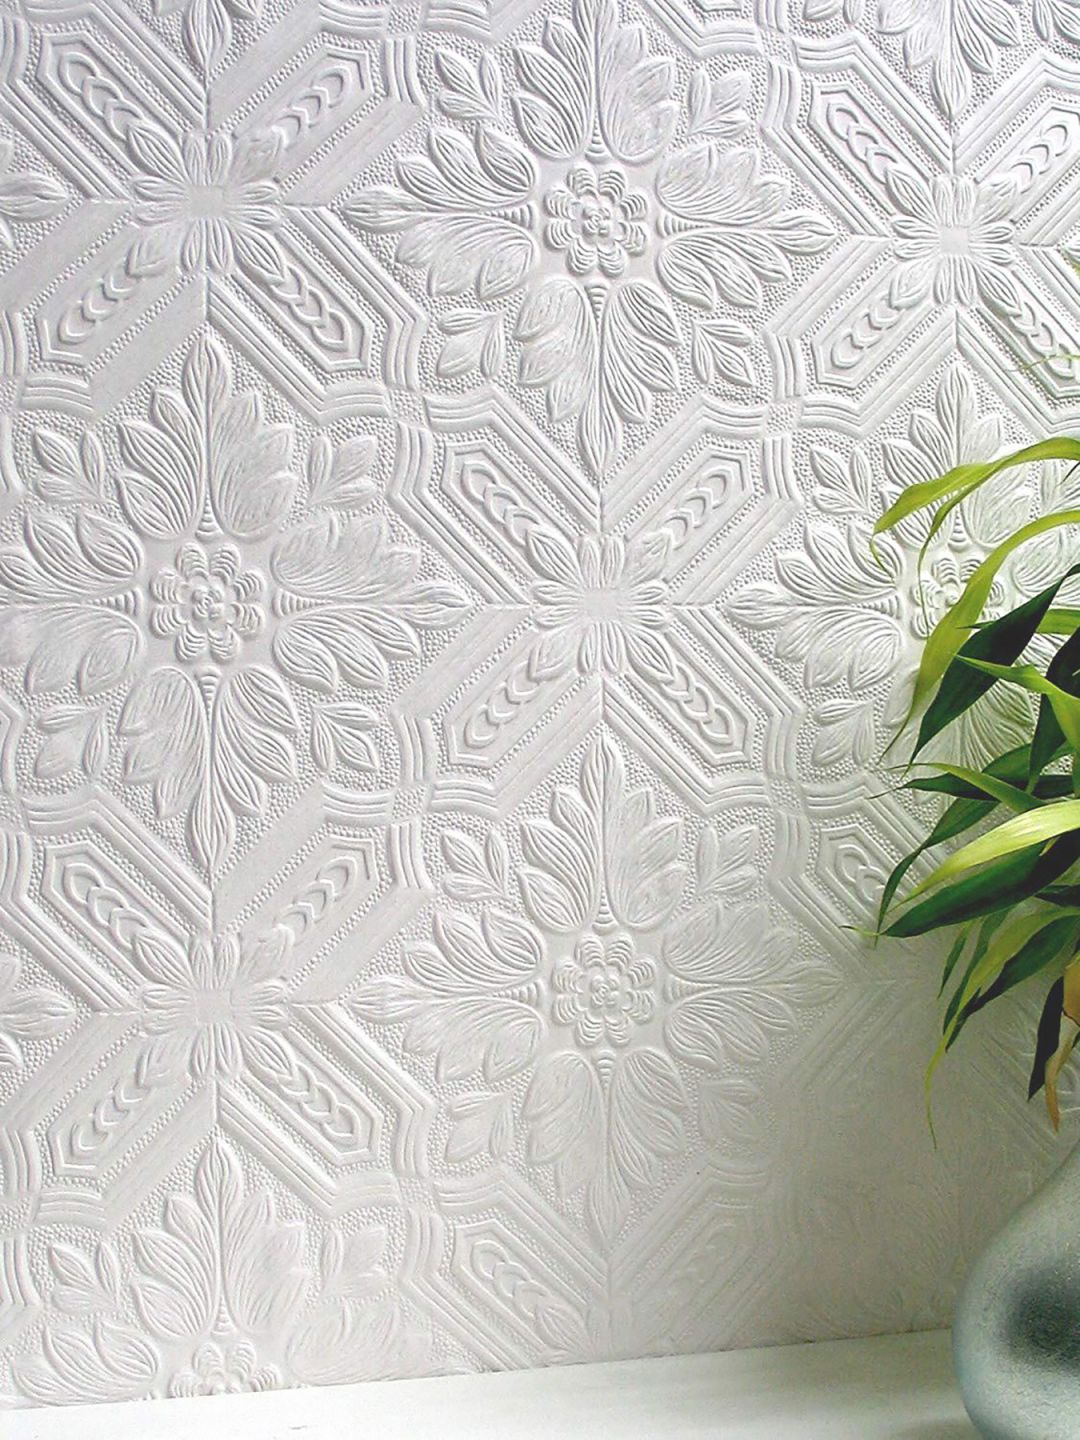 Papel pintado blanco con un patrón clásico y una superficie en relieve, adecuada para pintar encima